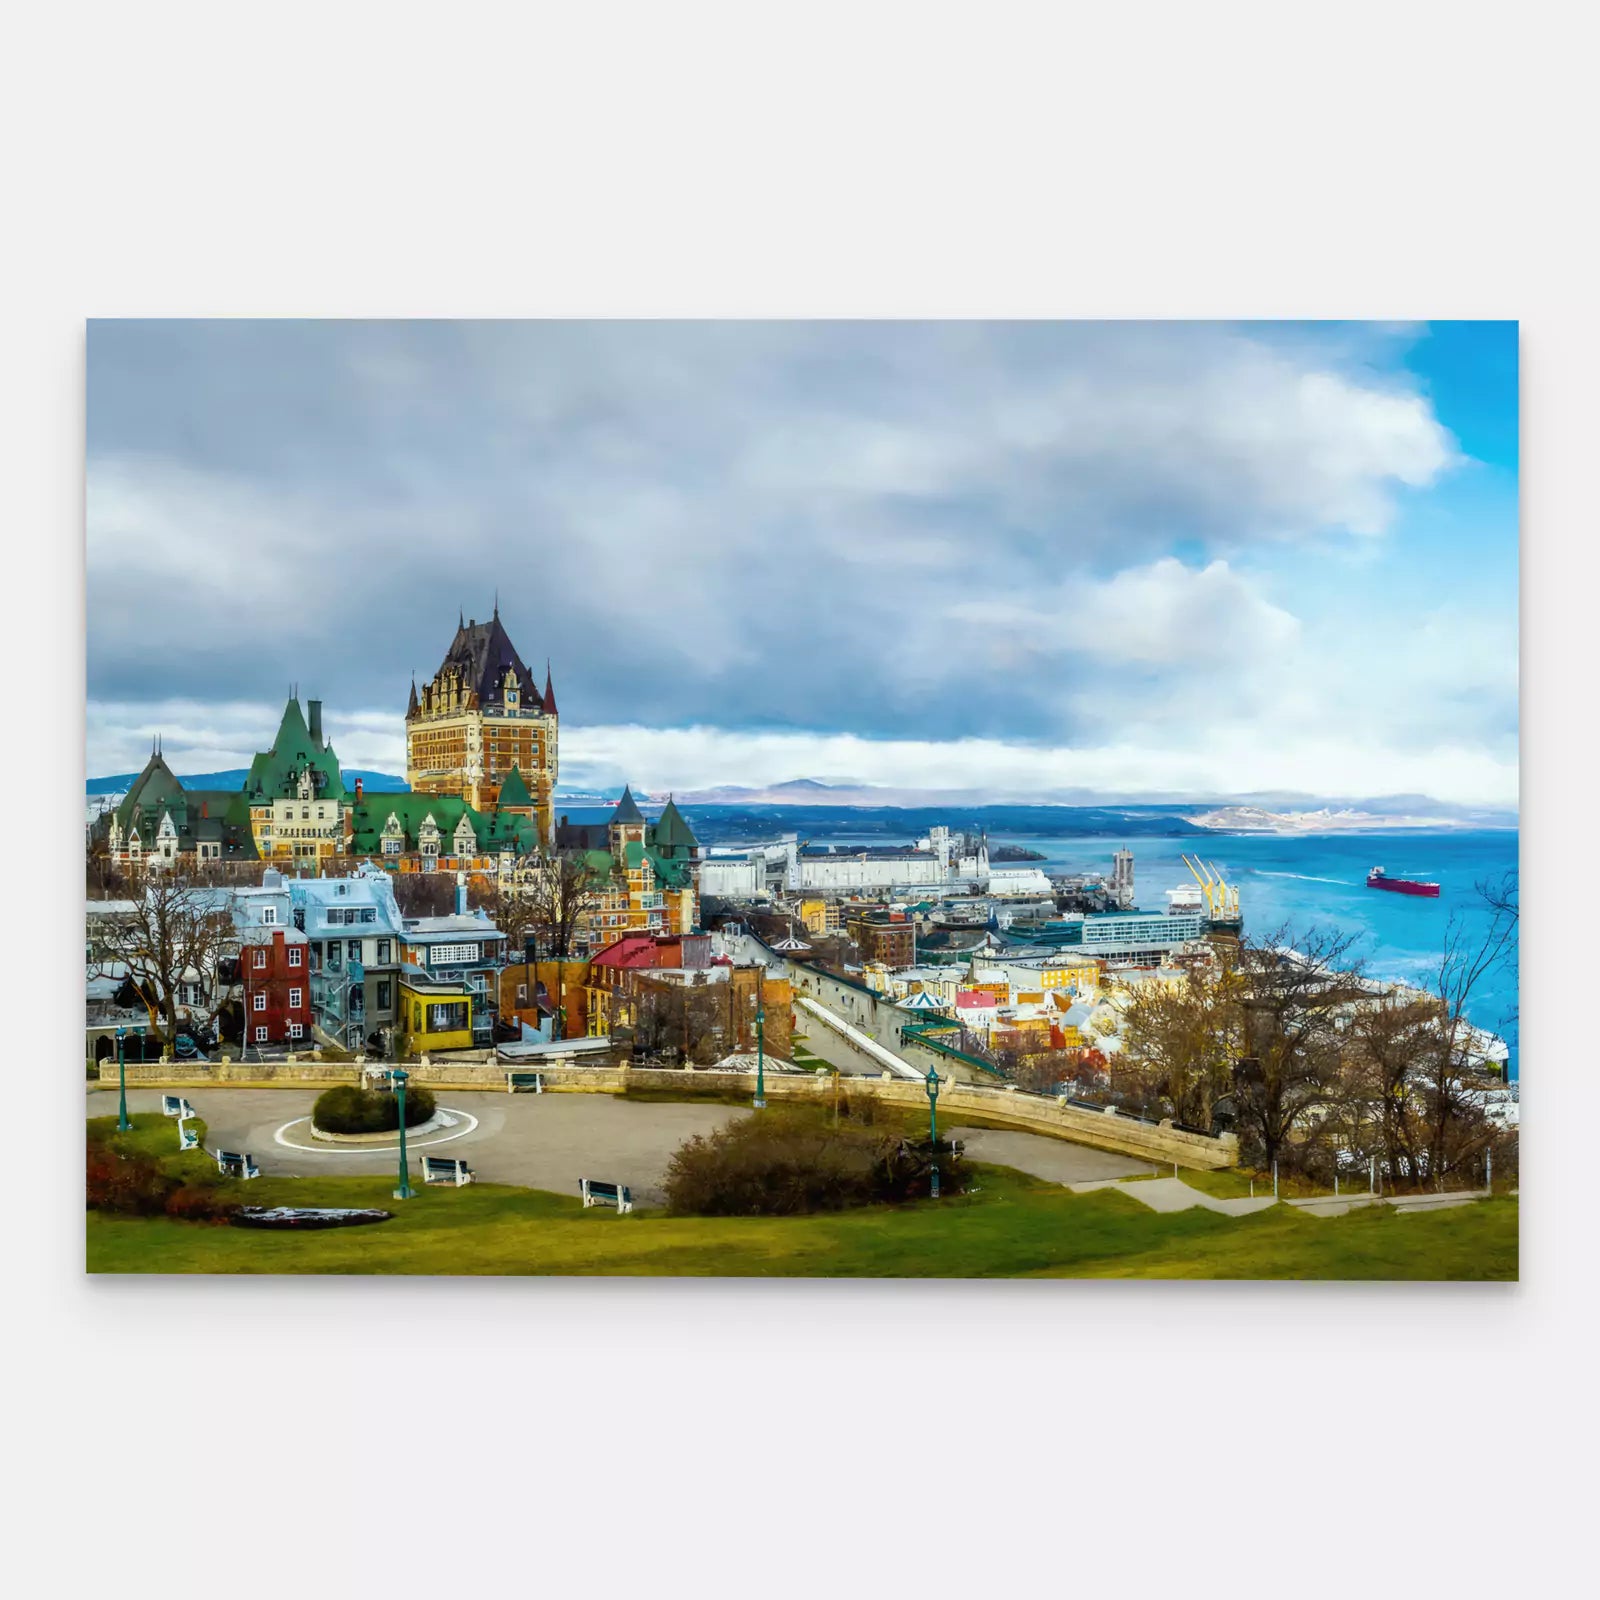 Quebec - Canada